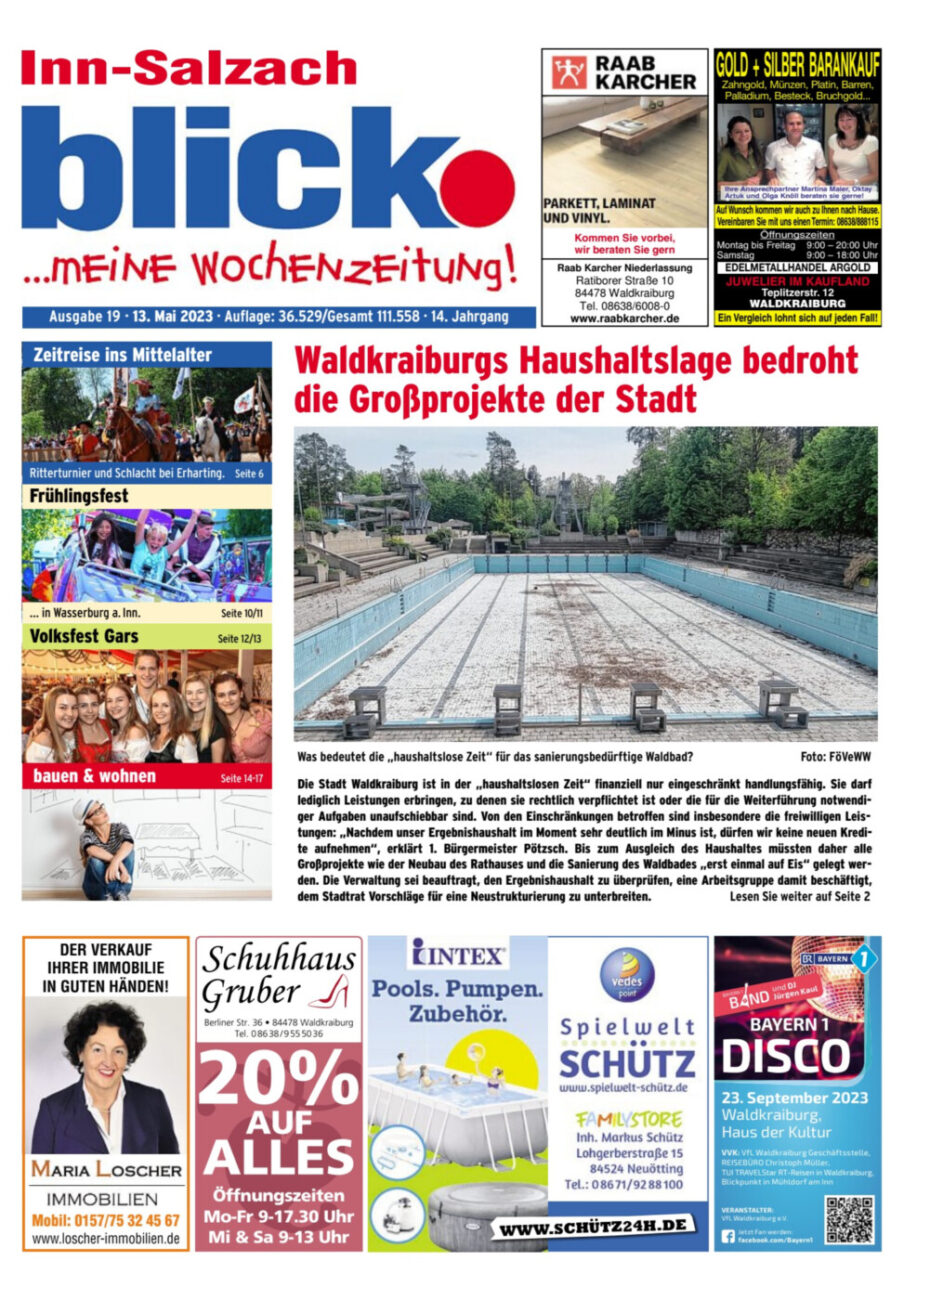 Artikel in der Wochenzeitung Inn-Salzach blick, vom 13.5.2023